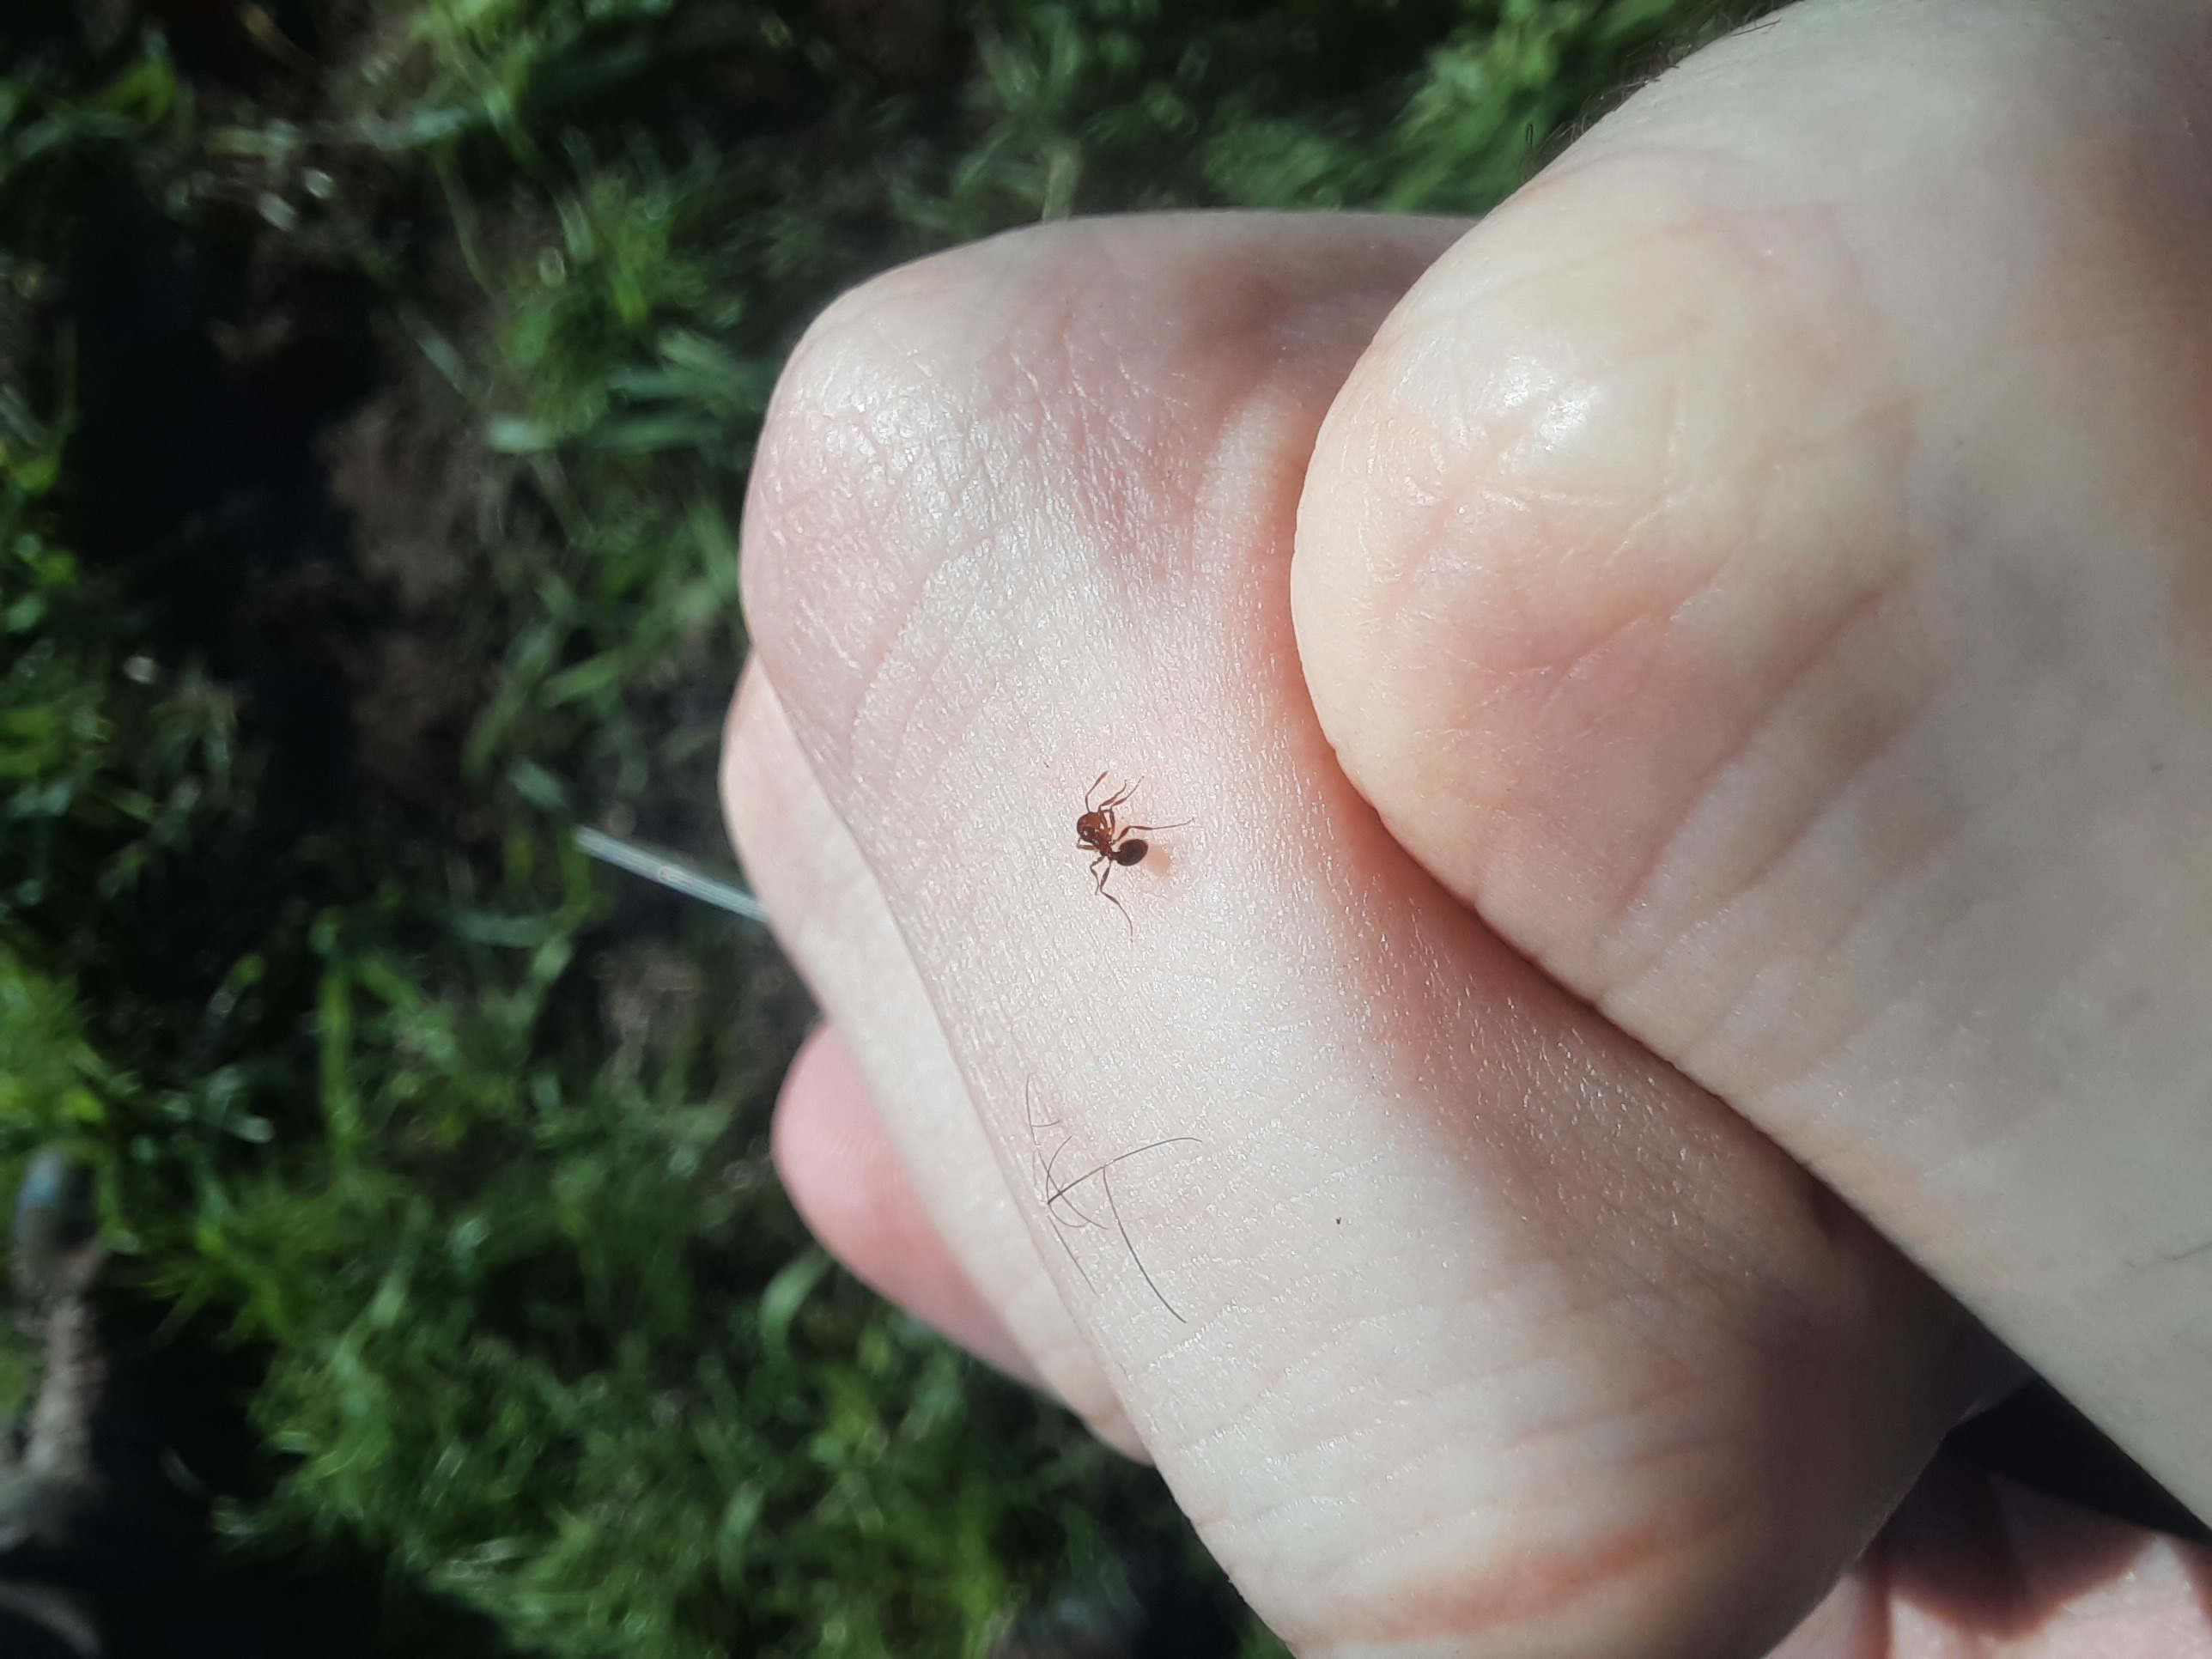 Una picadura de esta hormiga